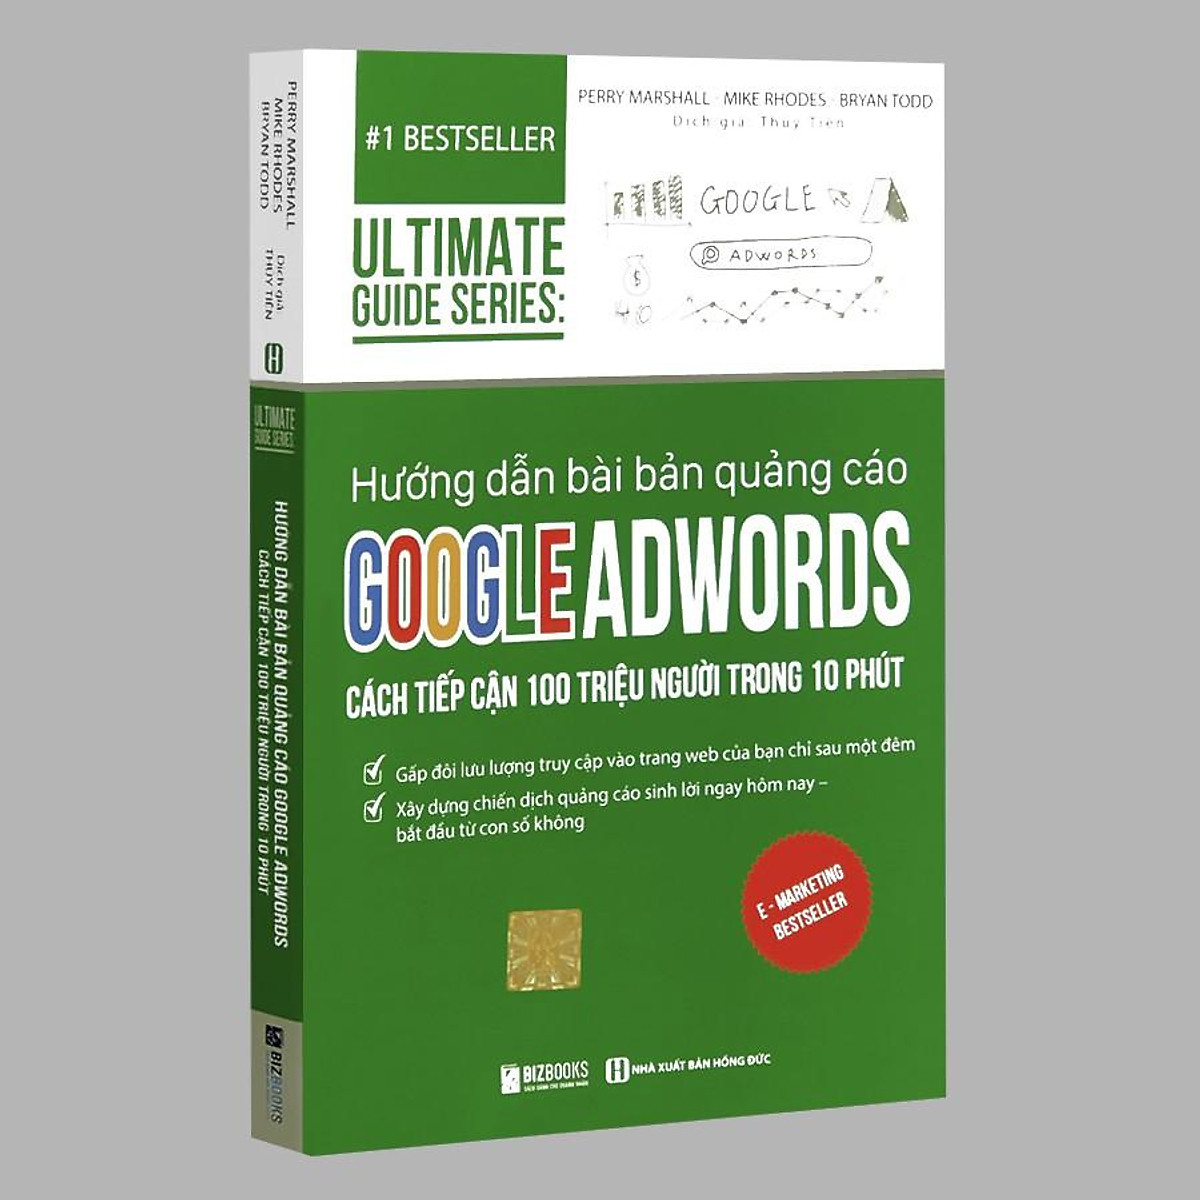 Sách - Hướng dẫn bài bản quảng cáo Google Adwords: Cách Tiếp Cận 100 Triệu Người Trong 10 Phút - 1 BestSeller